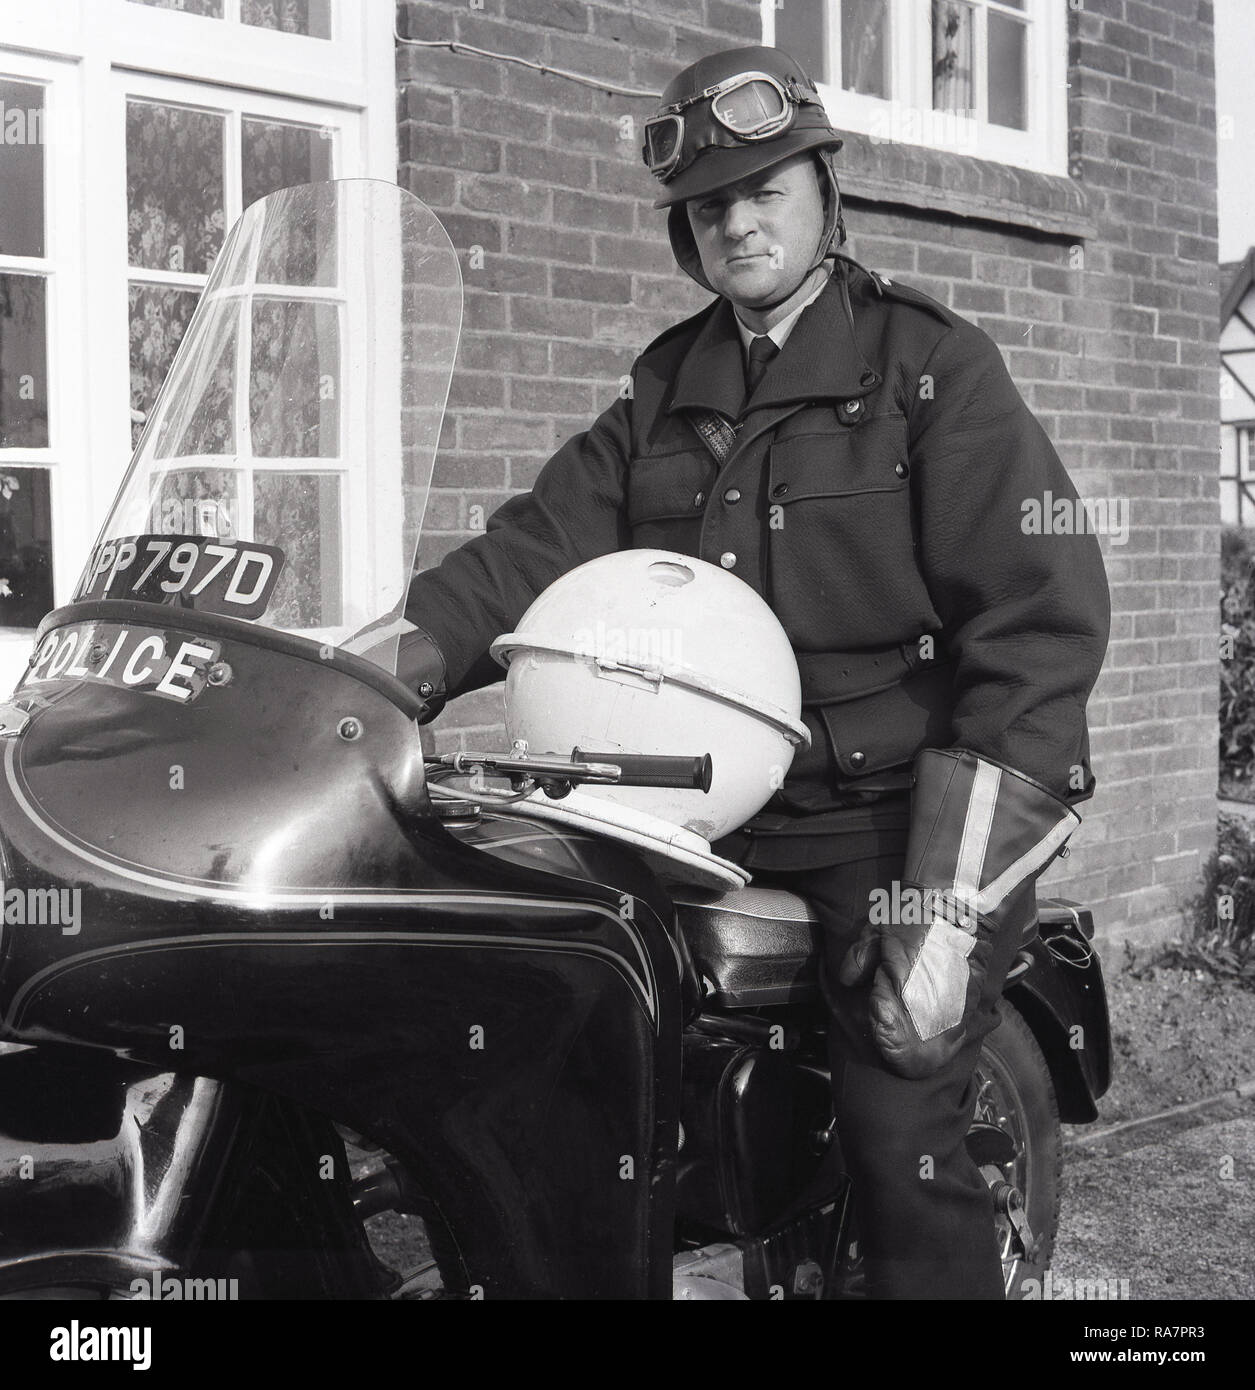 1967, la policía británica con casco y googles sentado en una motocicleta de la policía, fuera de una casa, con un hogar hecho "plato volador" en su regazo, Inglaterra, Reino Unido. A finales de los '60s Bretaña experimentó un "OVNI de la locura, alentado por programas de televisión populares tales como Dr Who y esta sierra mecánica de bricolaje muchos intenta crear su propio. Foto de stock